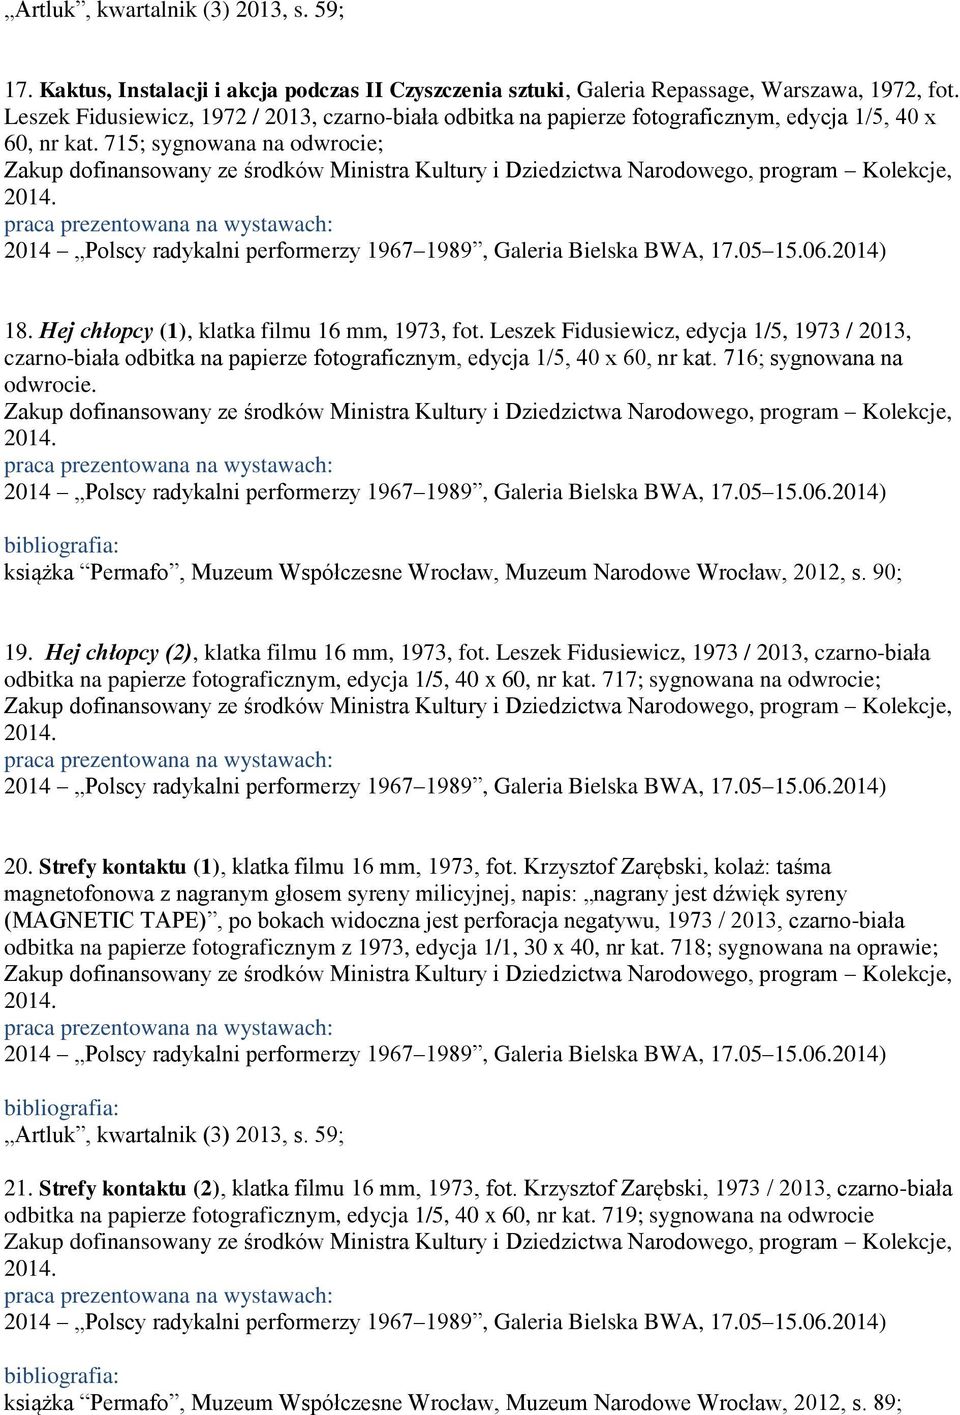 Leszek Fidusiewicz, edycja 1/5, 1973 / 2013, czarno-biała odbitka na papierze fotograficznym, edycja 1/5, 40 x 60, nr kat. 716; sygnowana na odwrocie.